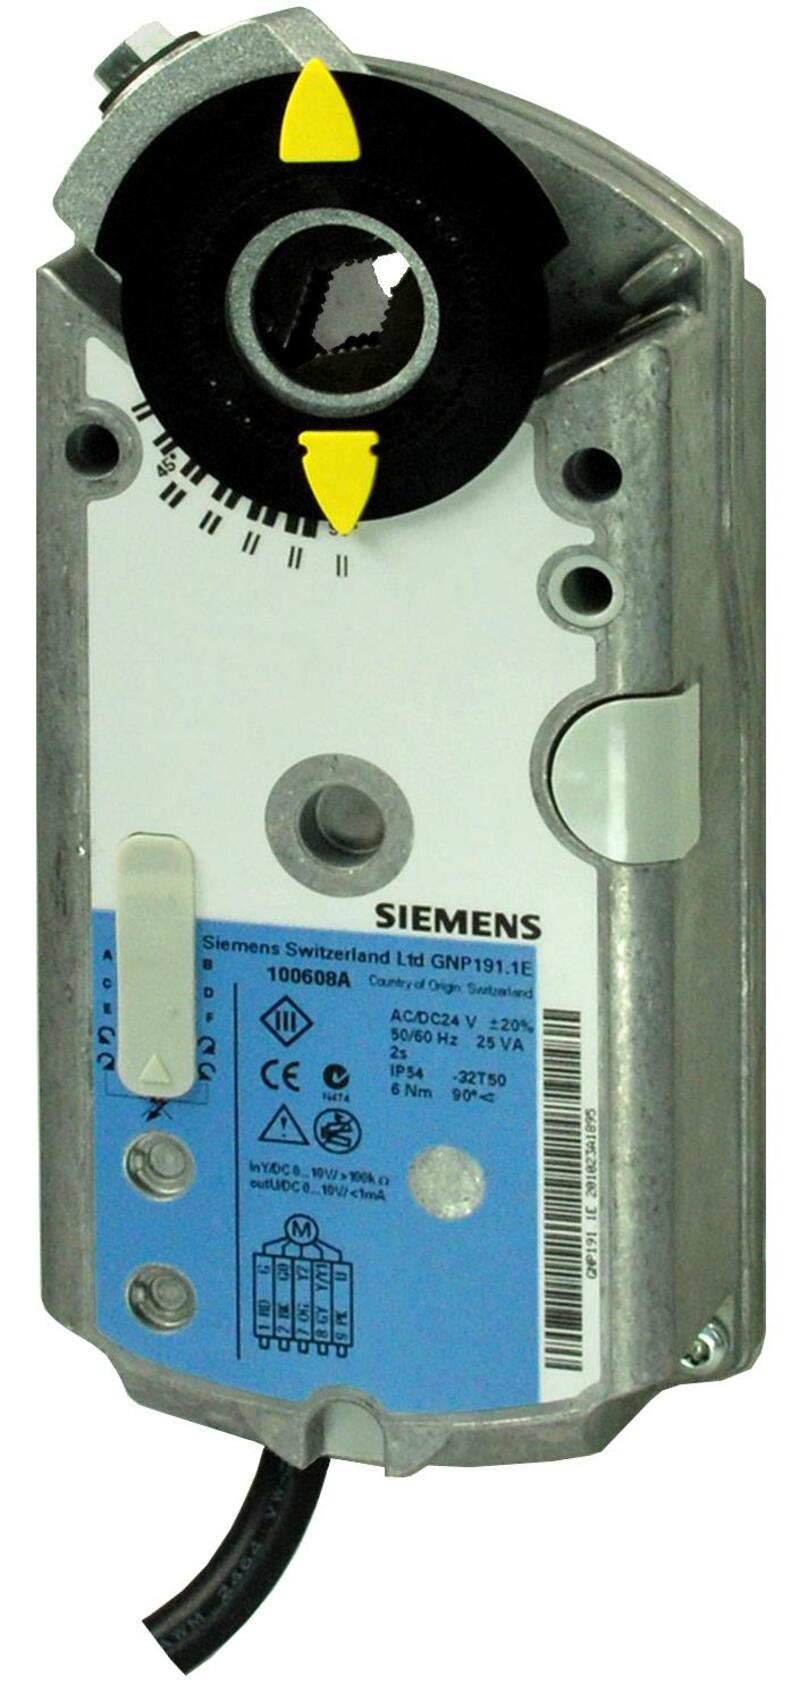 Заказ и доставка приводов GMA 326.1 E SIEMENS из наличия